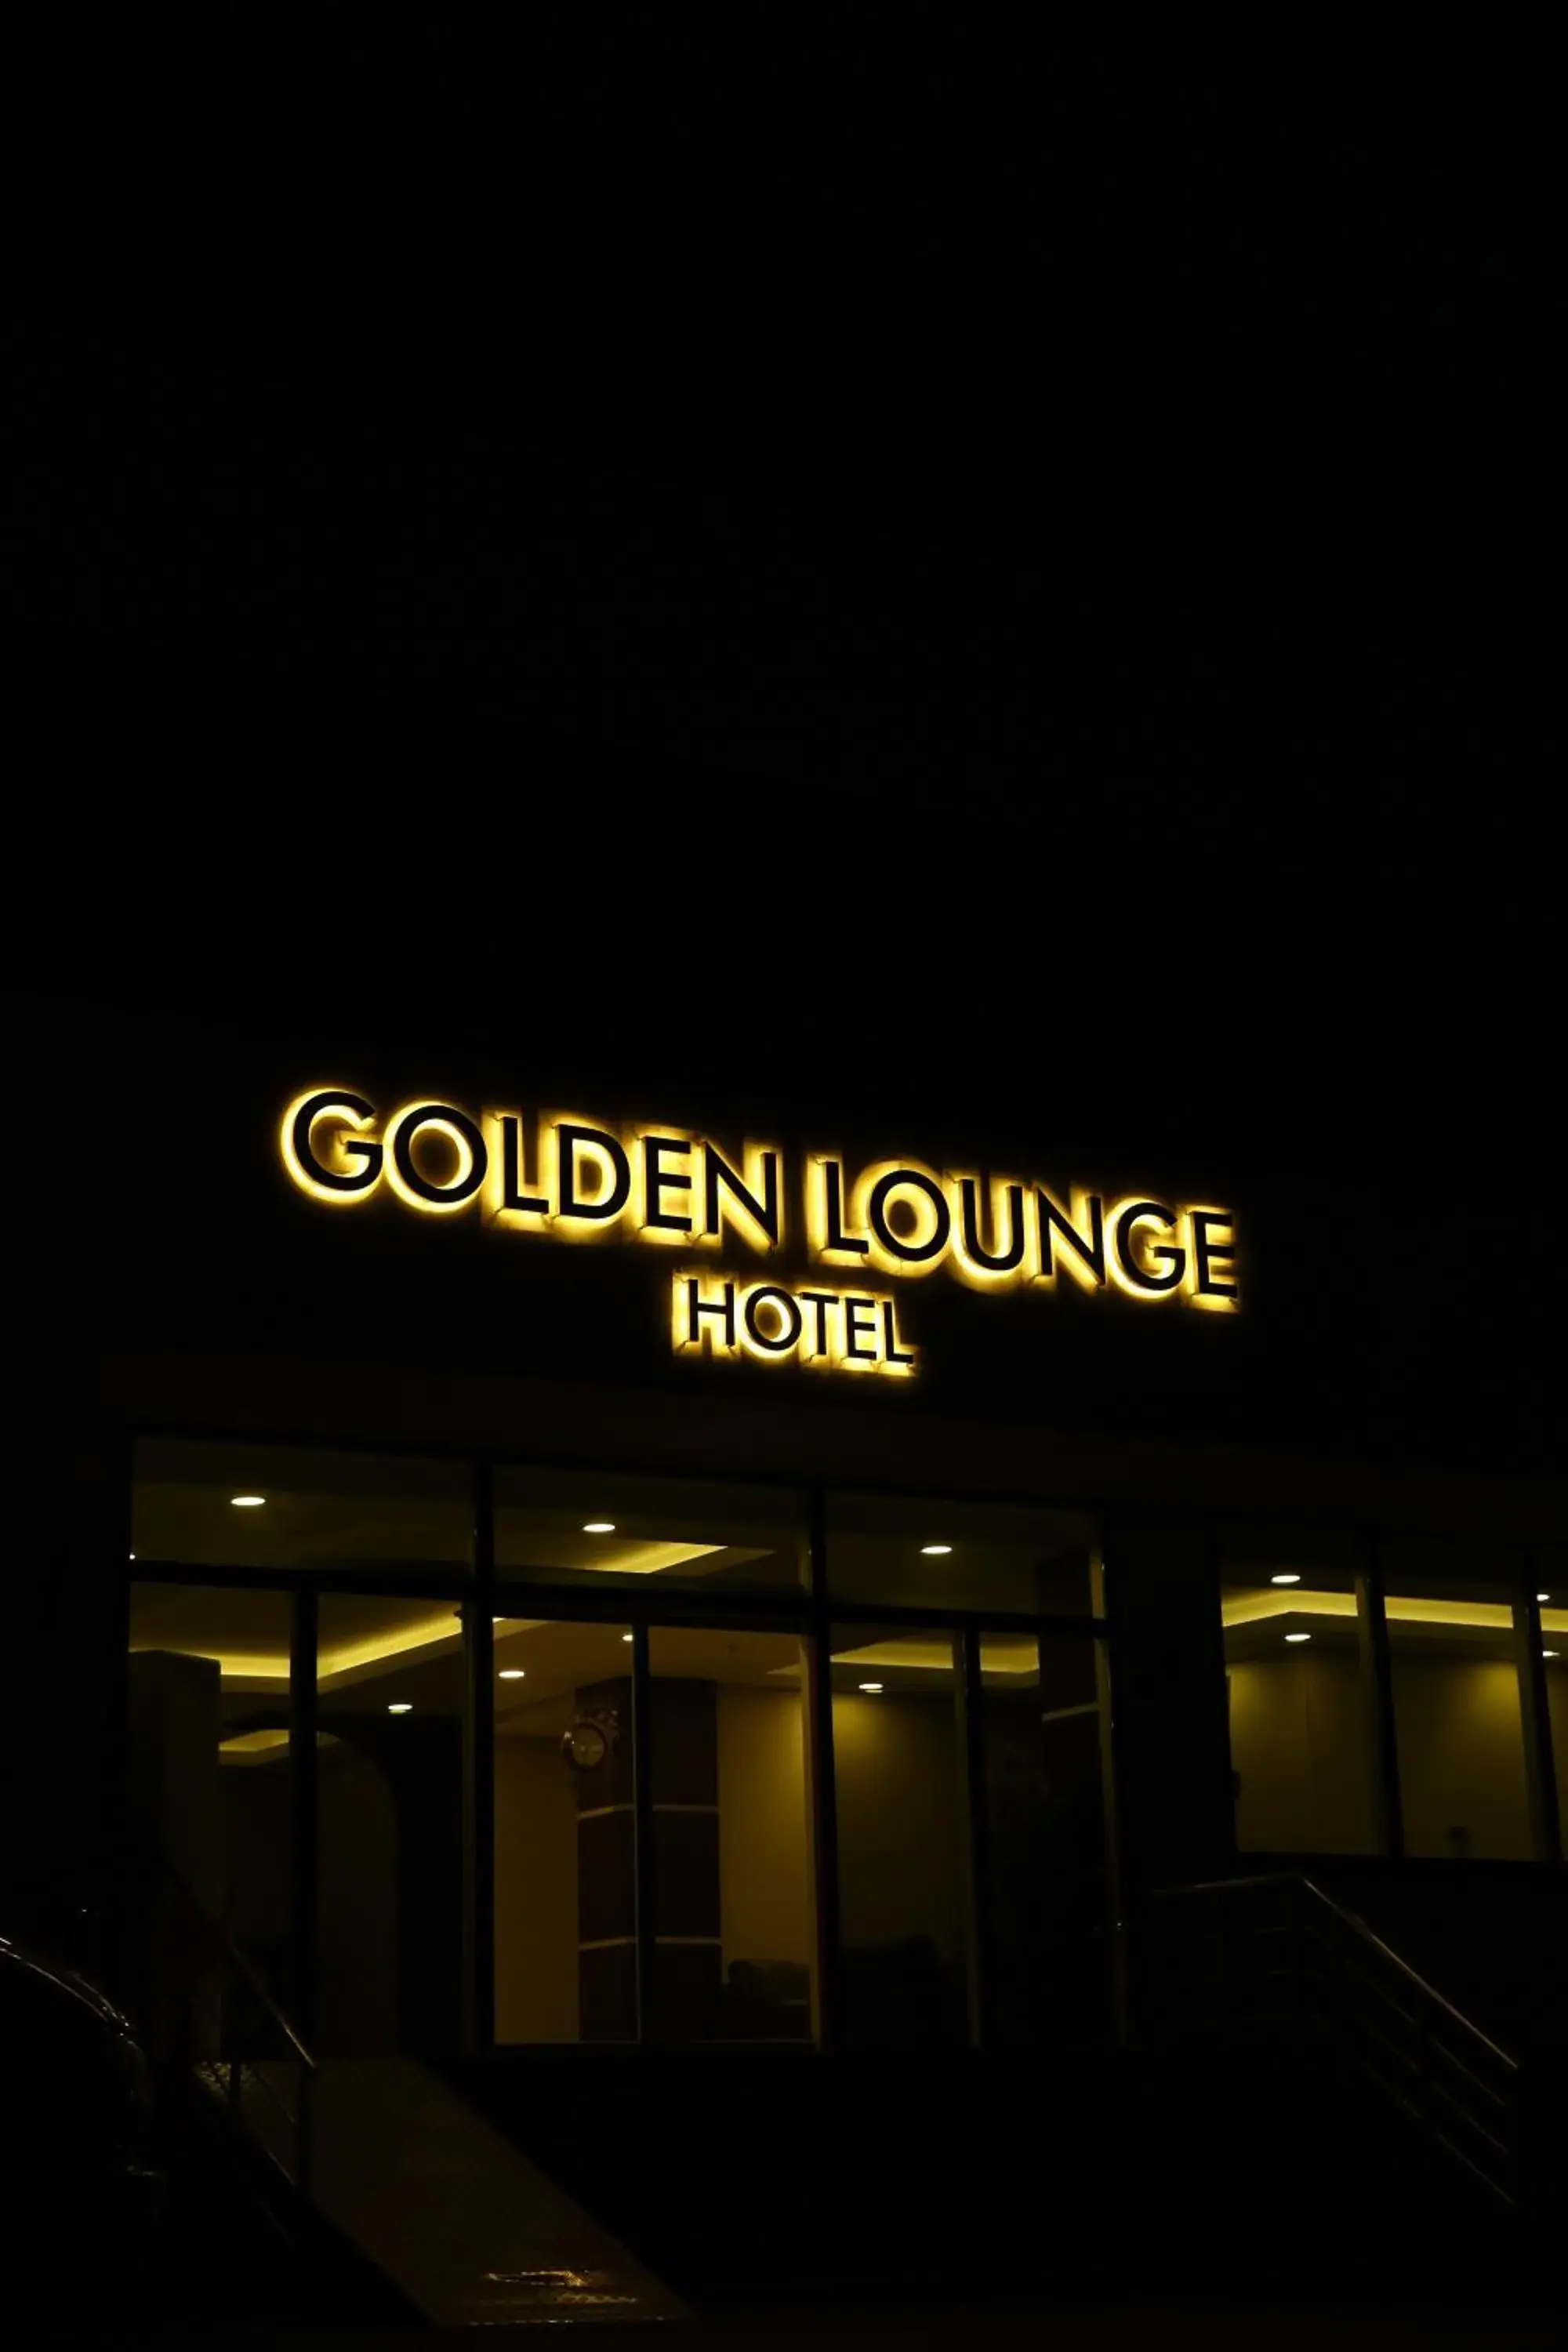 Facade/entrance in Golden Lounge Hotel